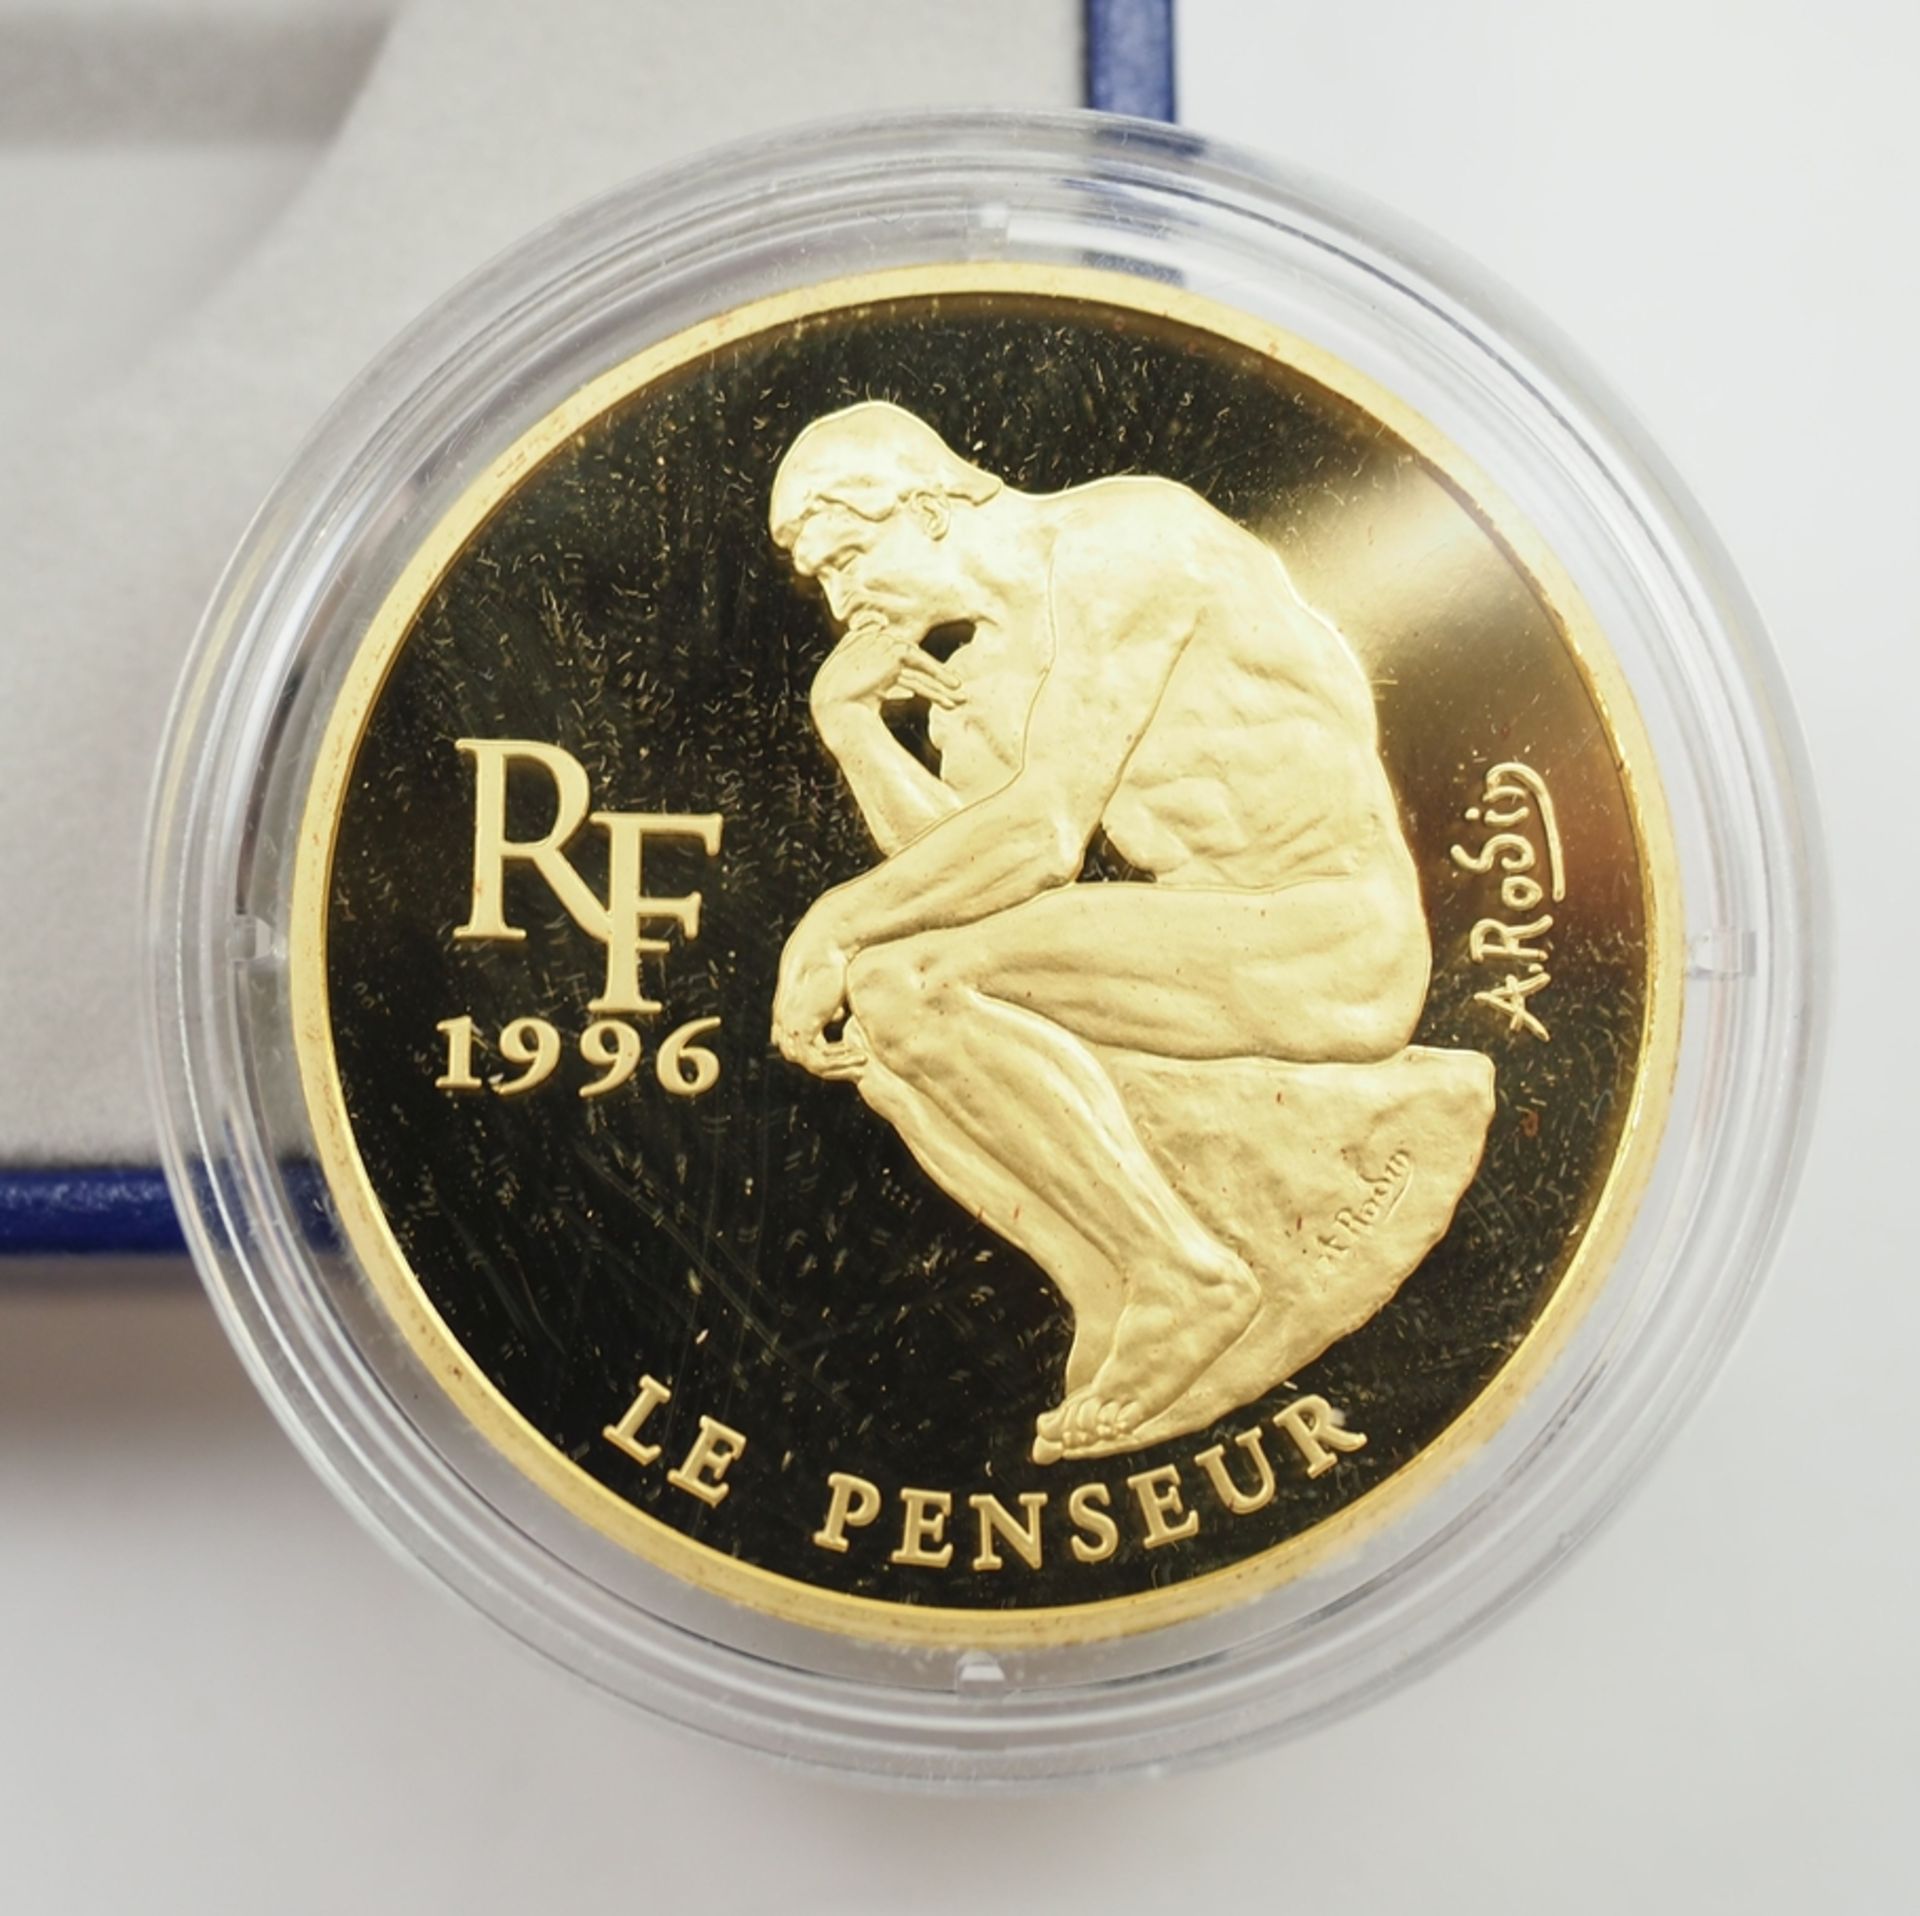 Frankreich: GOLD Gedenkmünze Trésors des Musées d' Europe Le Penseur de Rodin. - Image 2 of 3